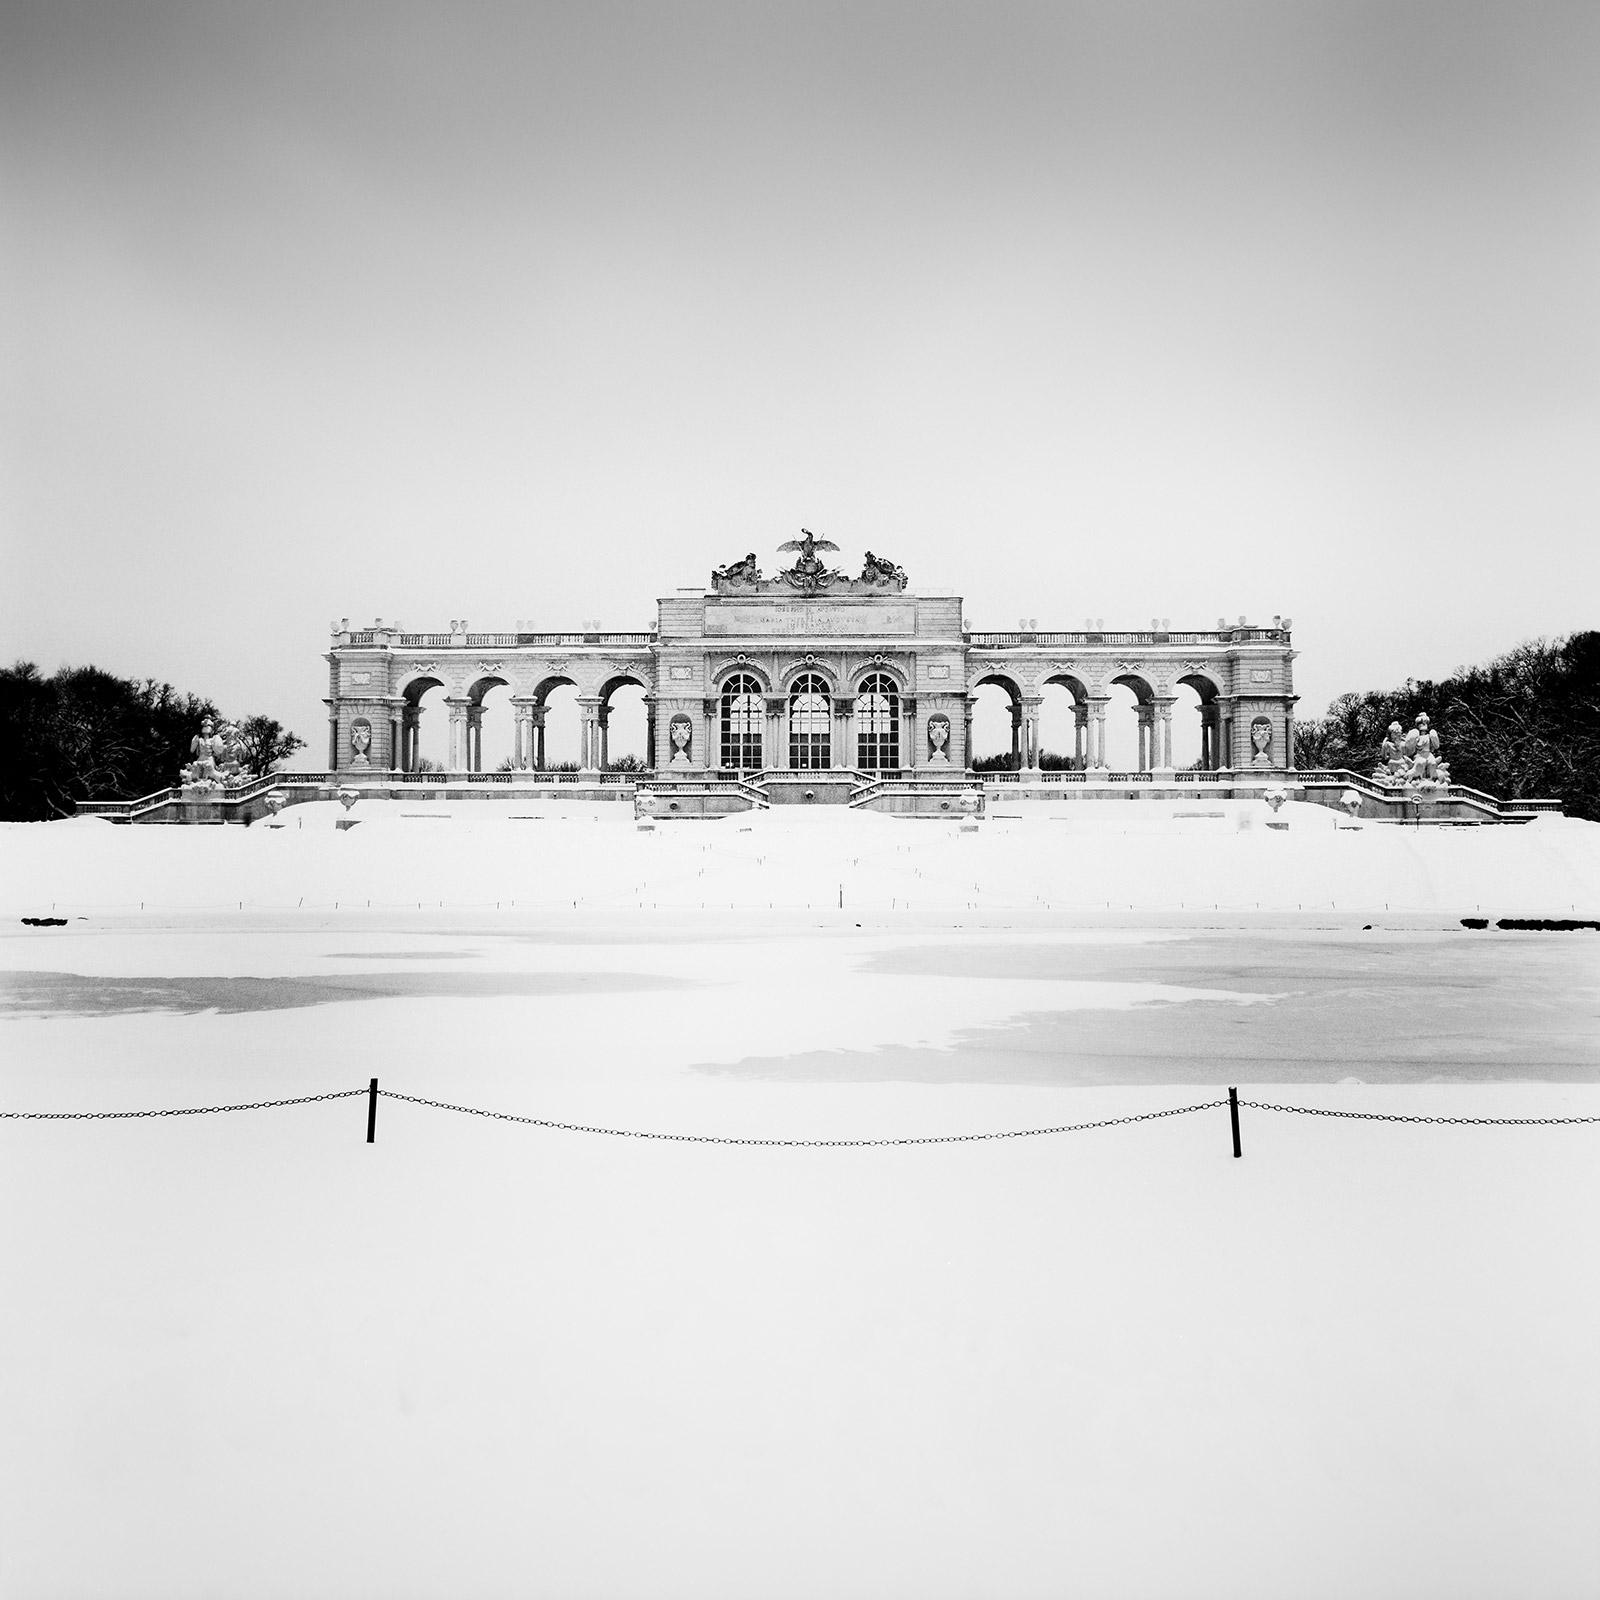 Gerald Berghammer Black and White Photograph - Gloriette Winter, Schloss Schoenbrunn, Vienna, B&W cityscape photography print